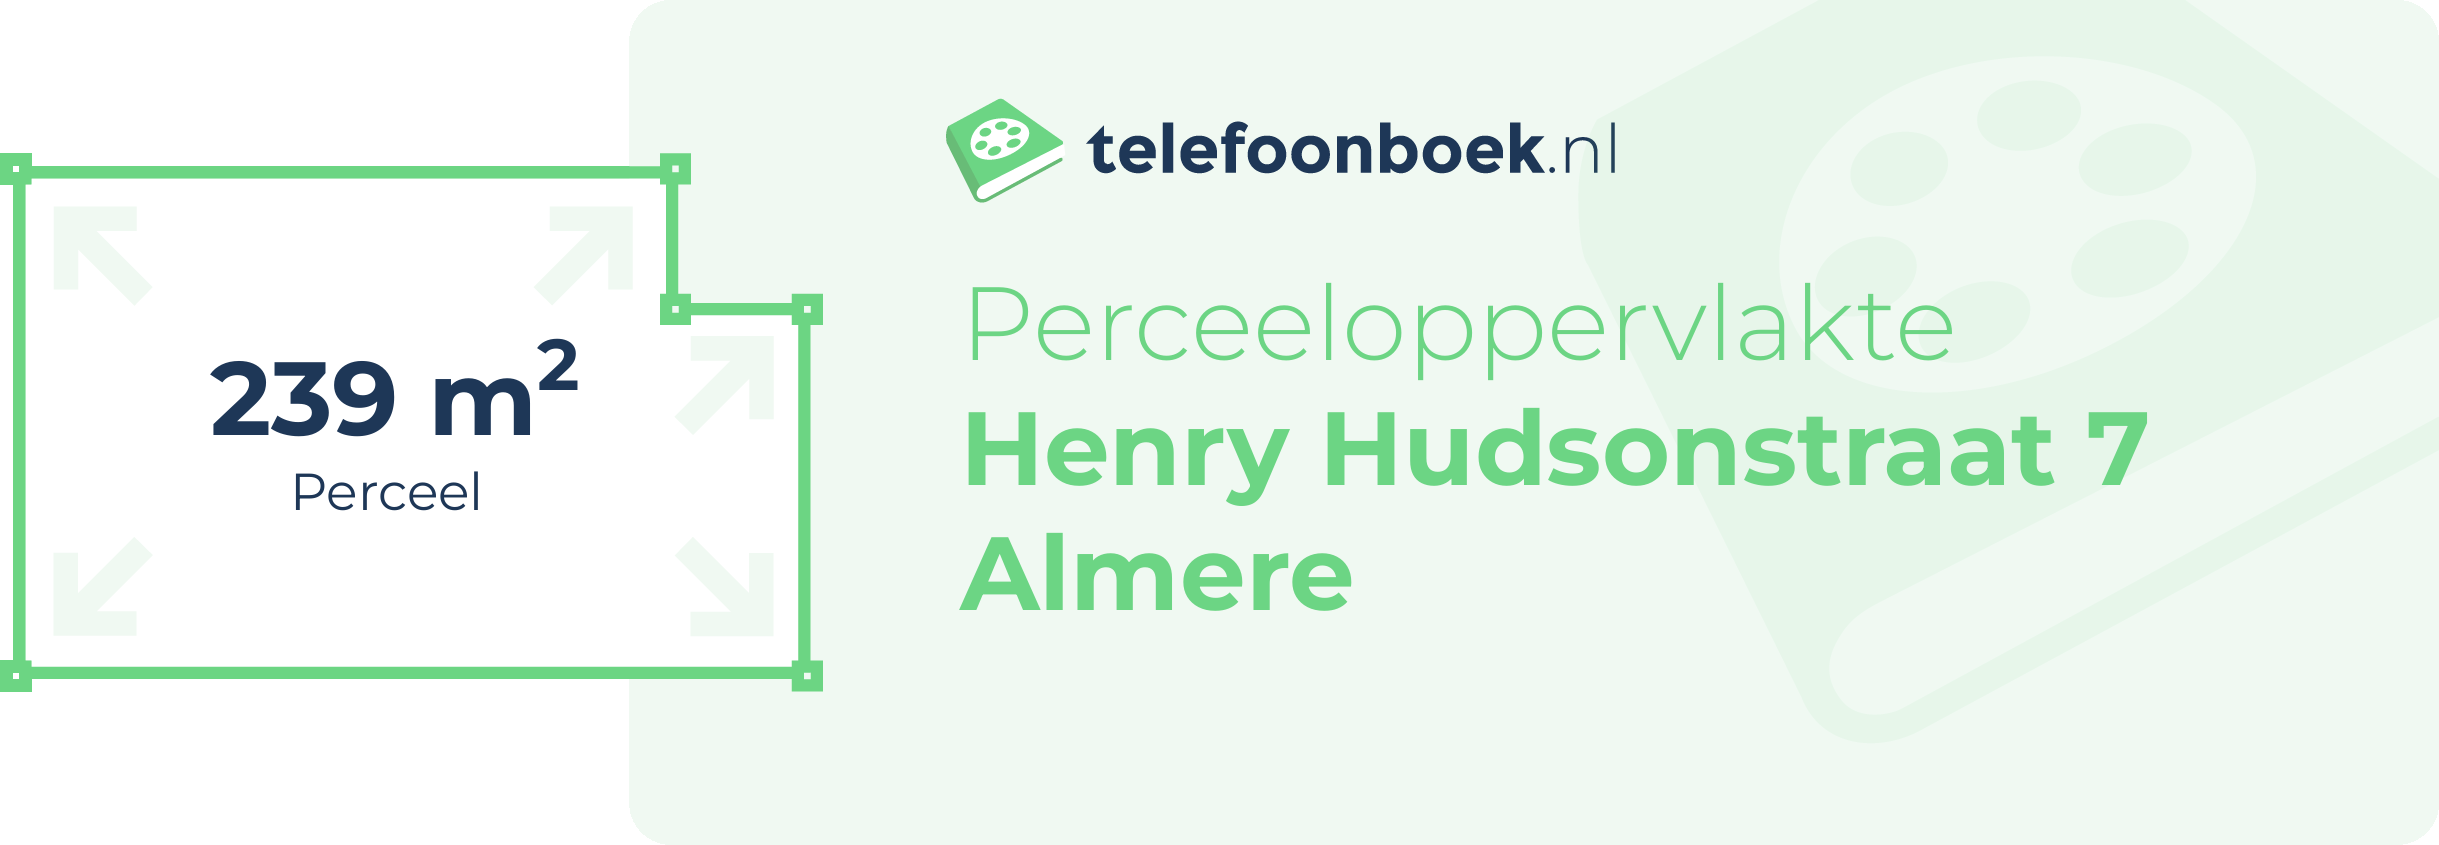 Perceeloppervlakte Henry Hudsonstraat 7 Almere